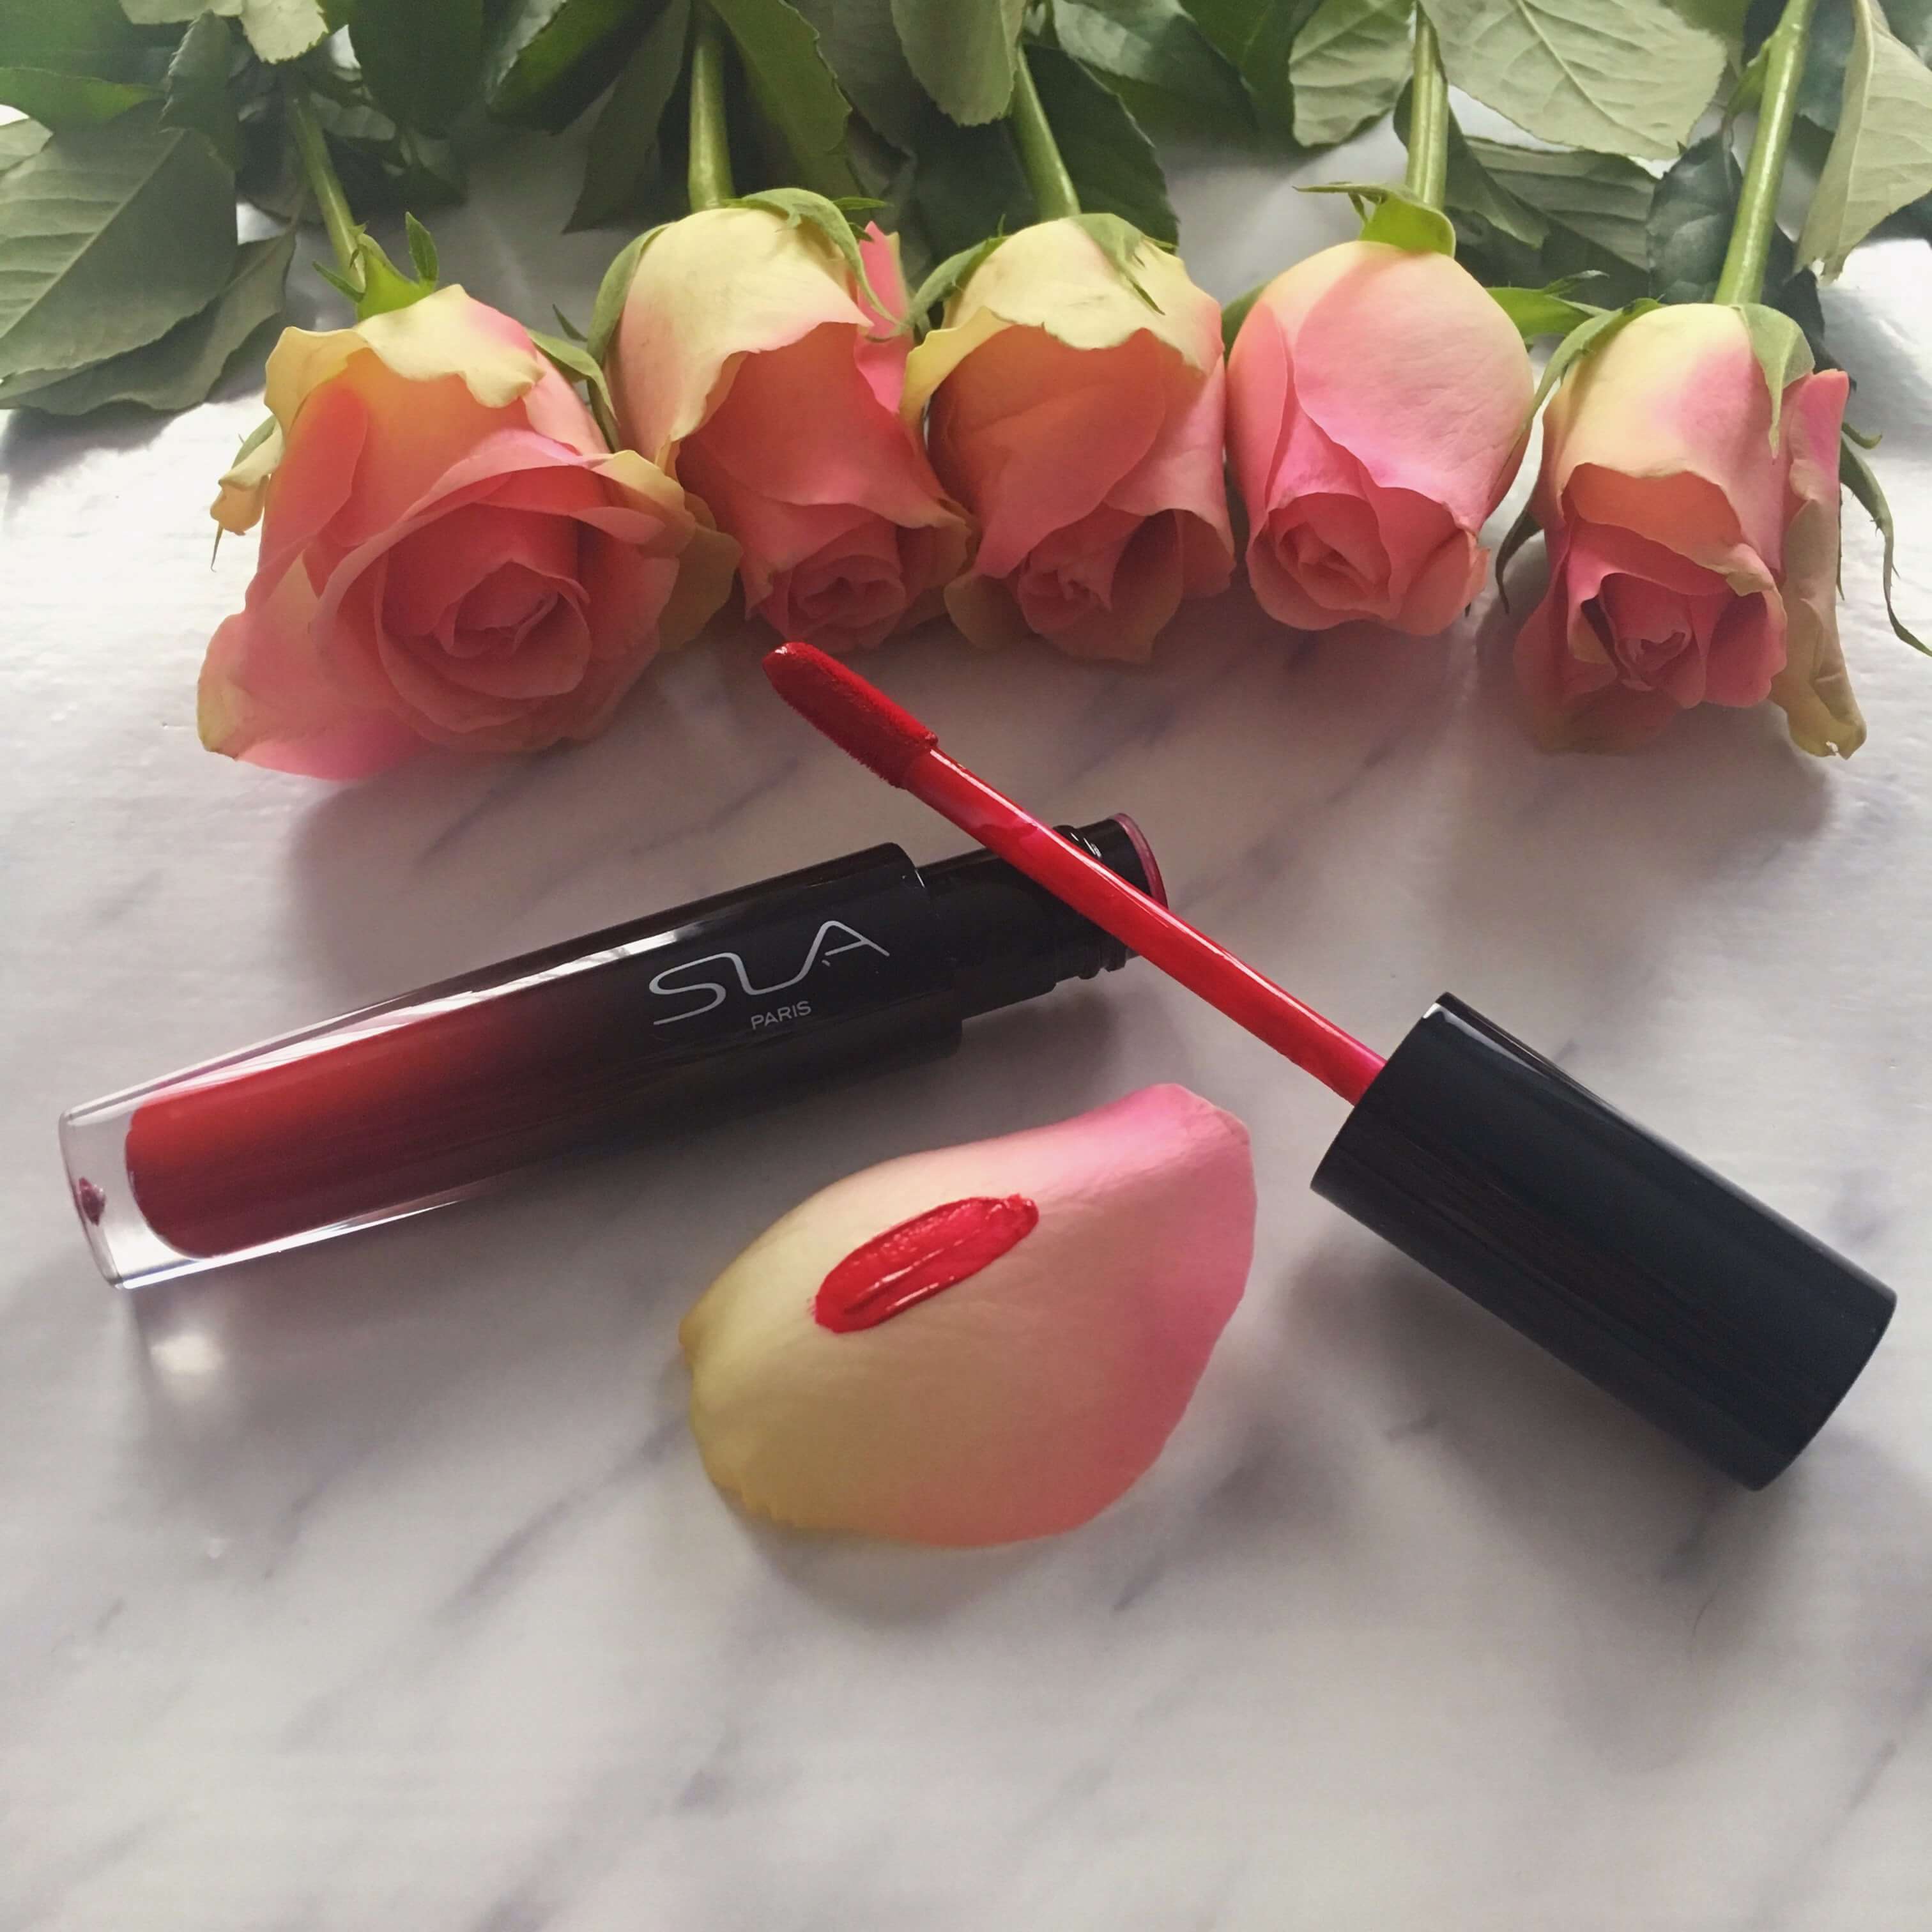 Heute zeige ich euch ein romantisches Valentinstags - Make Up mit den hochwertigen Produkten LIP CRUSH, den Mascara und der #HOW TO Palette von SLA Paris